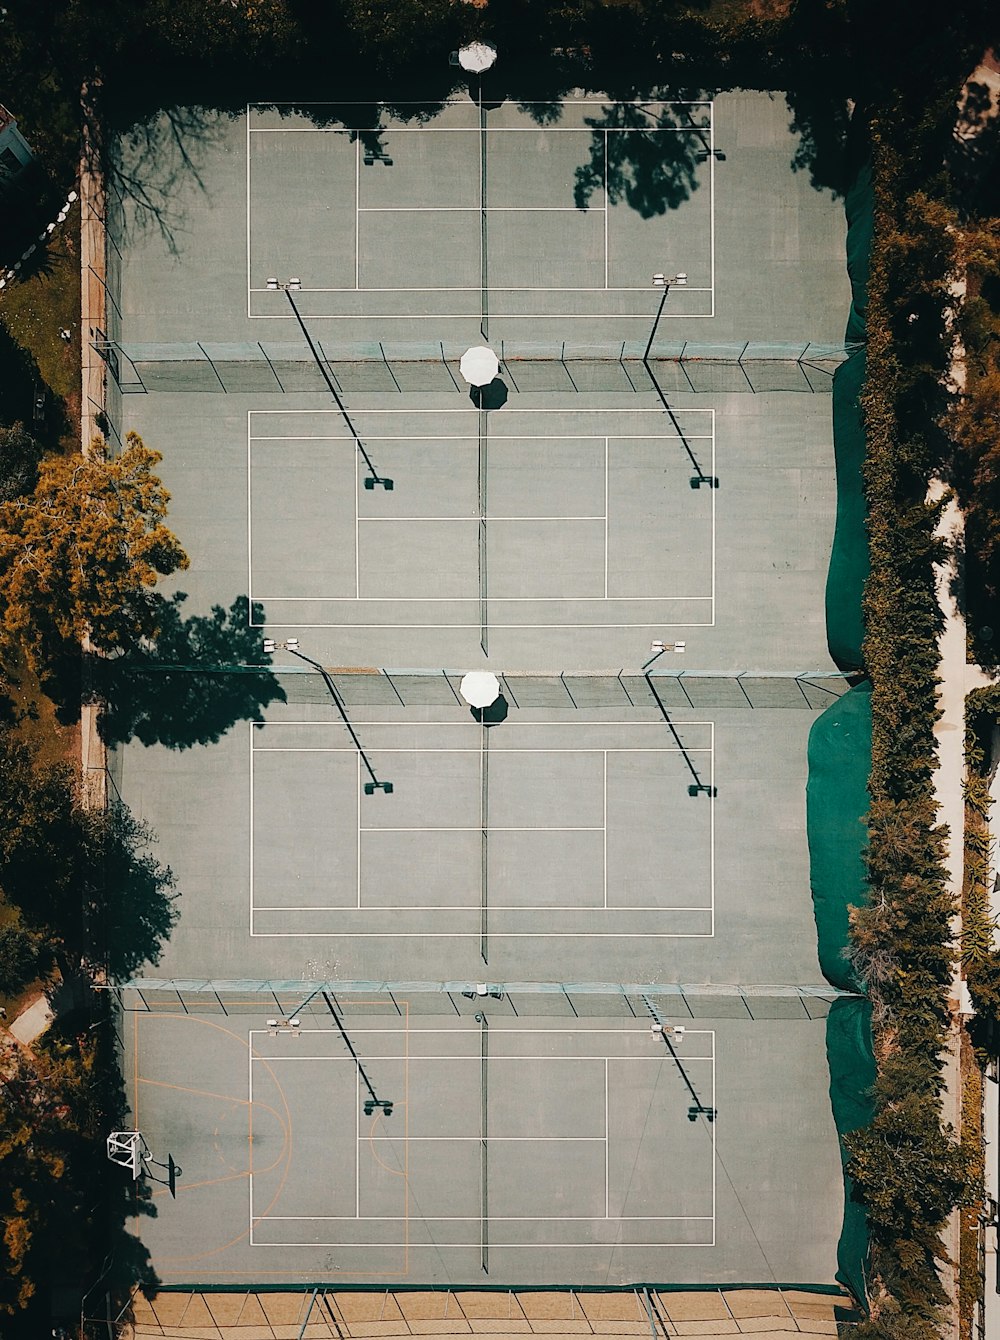 fotografia aerea del campo di gioco circondato da aranci